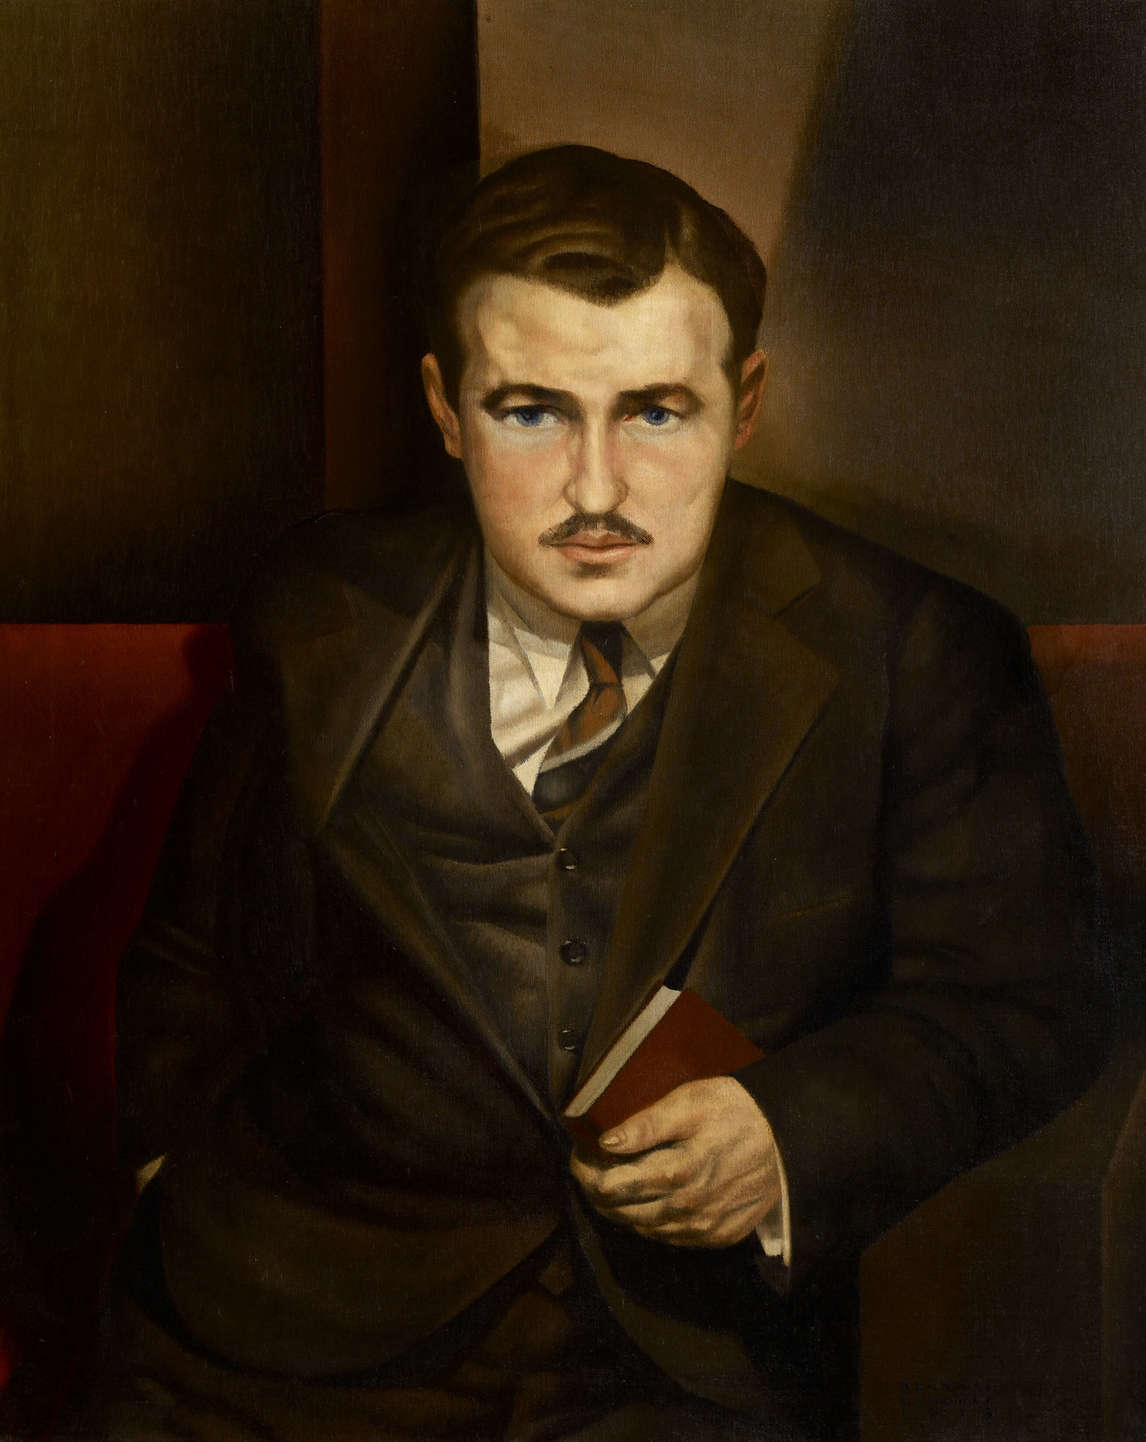 Bertram Brooker, Morley Callahan, 1932